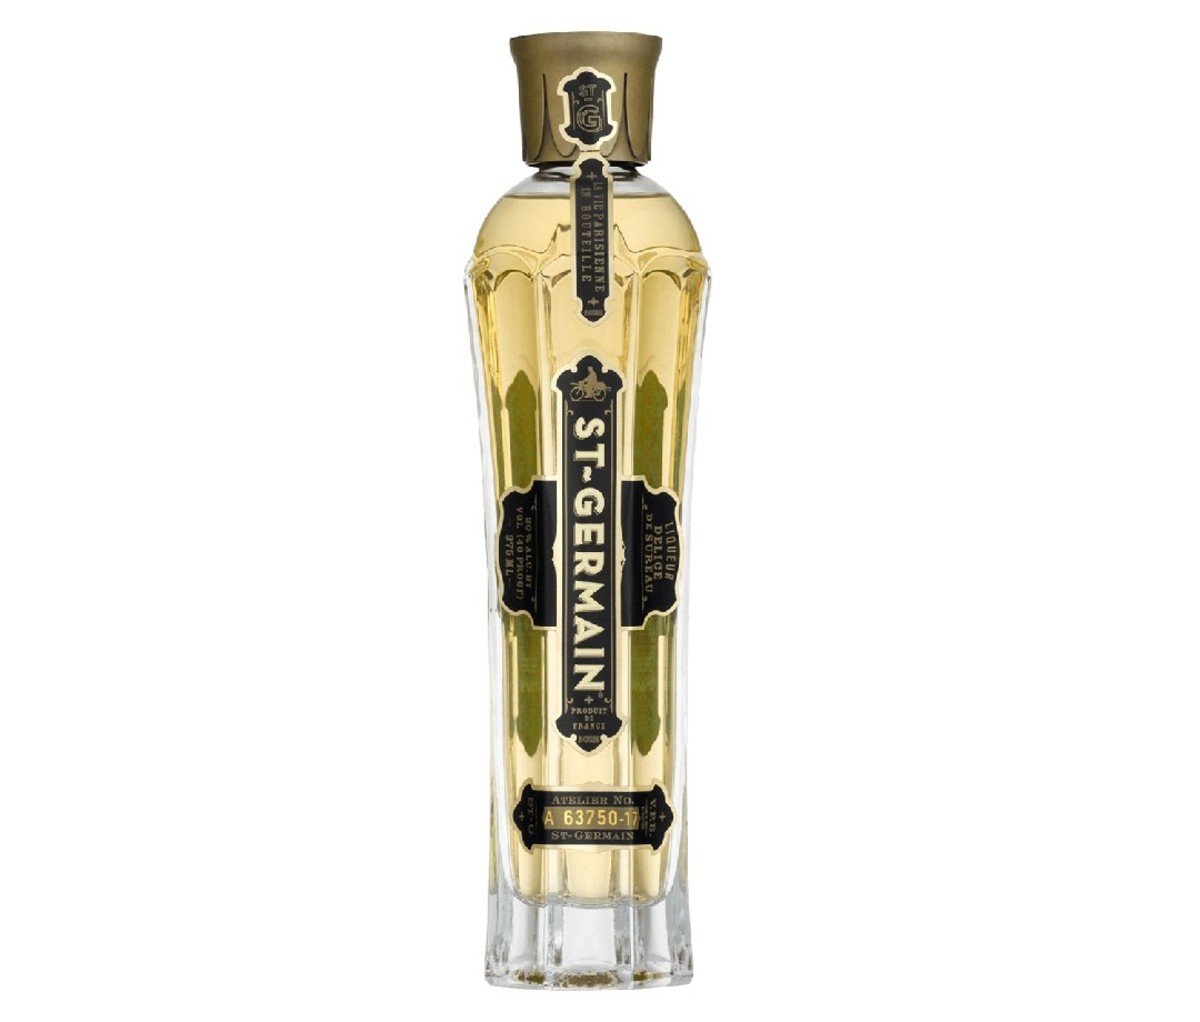 Bottle of St-Germain liqueur